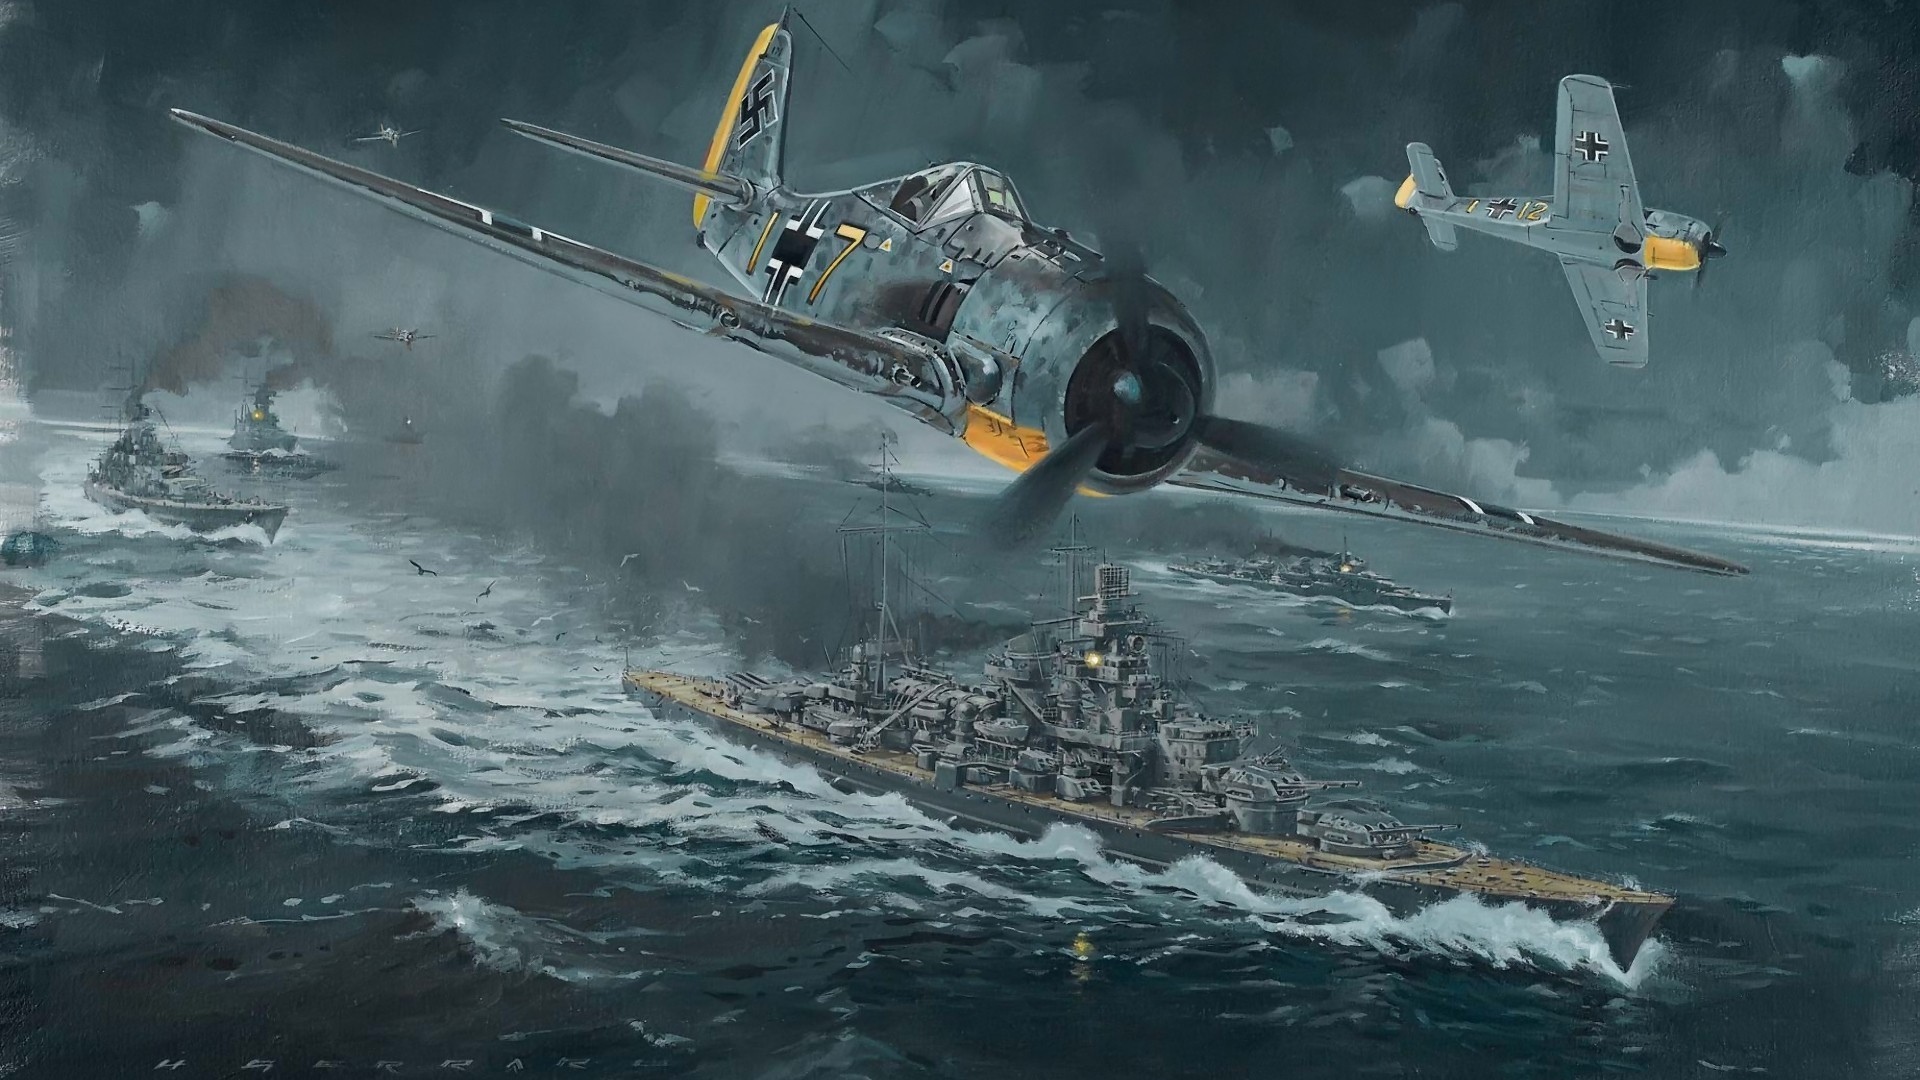 飞机绘图战舰fw 190通道冲刺1942年操作cerberus高清壁纸高清原图查看